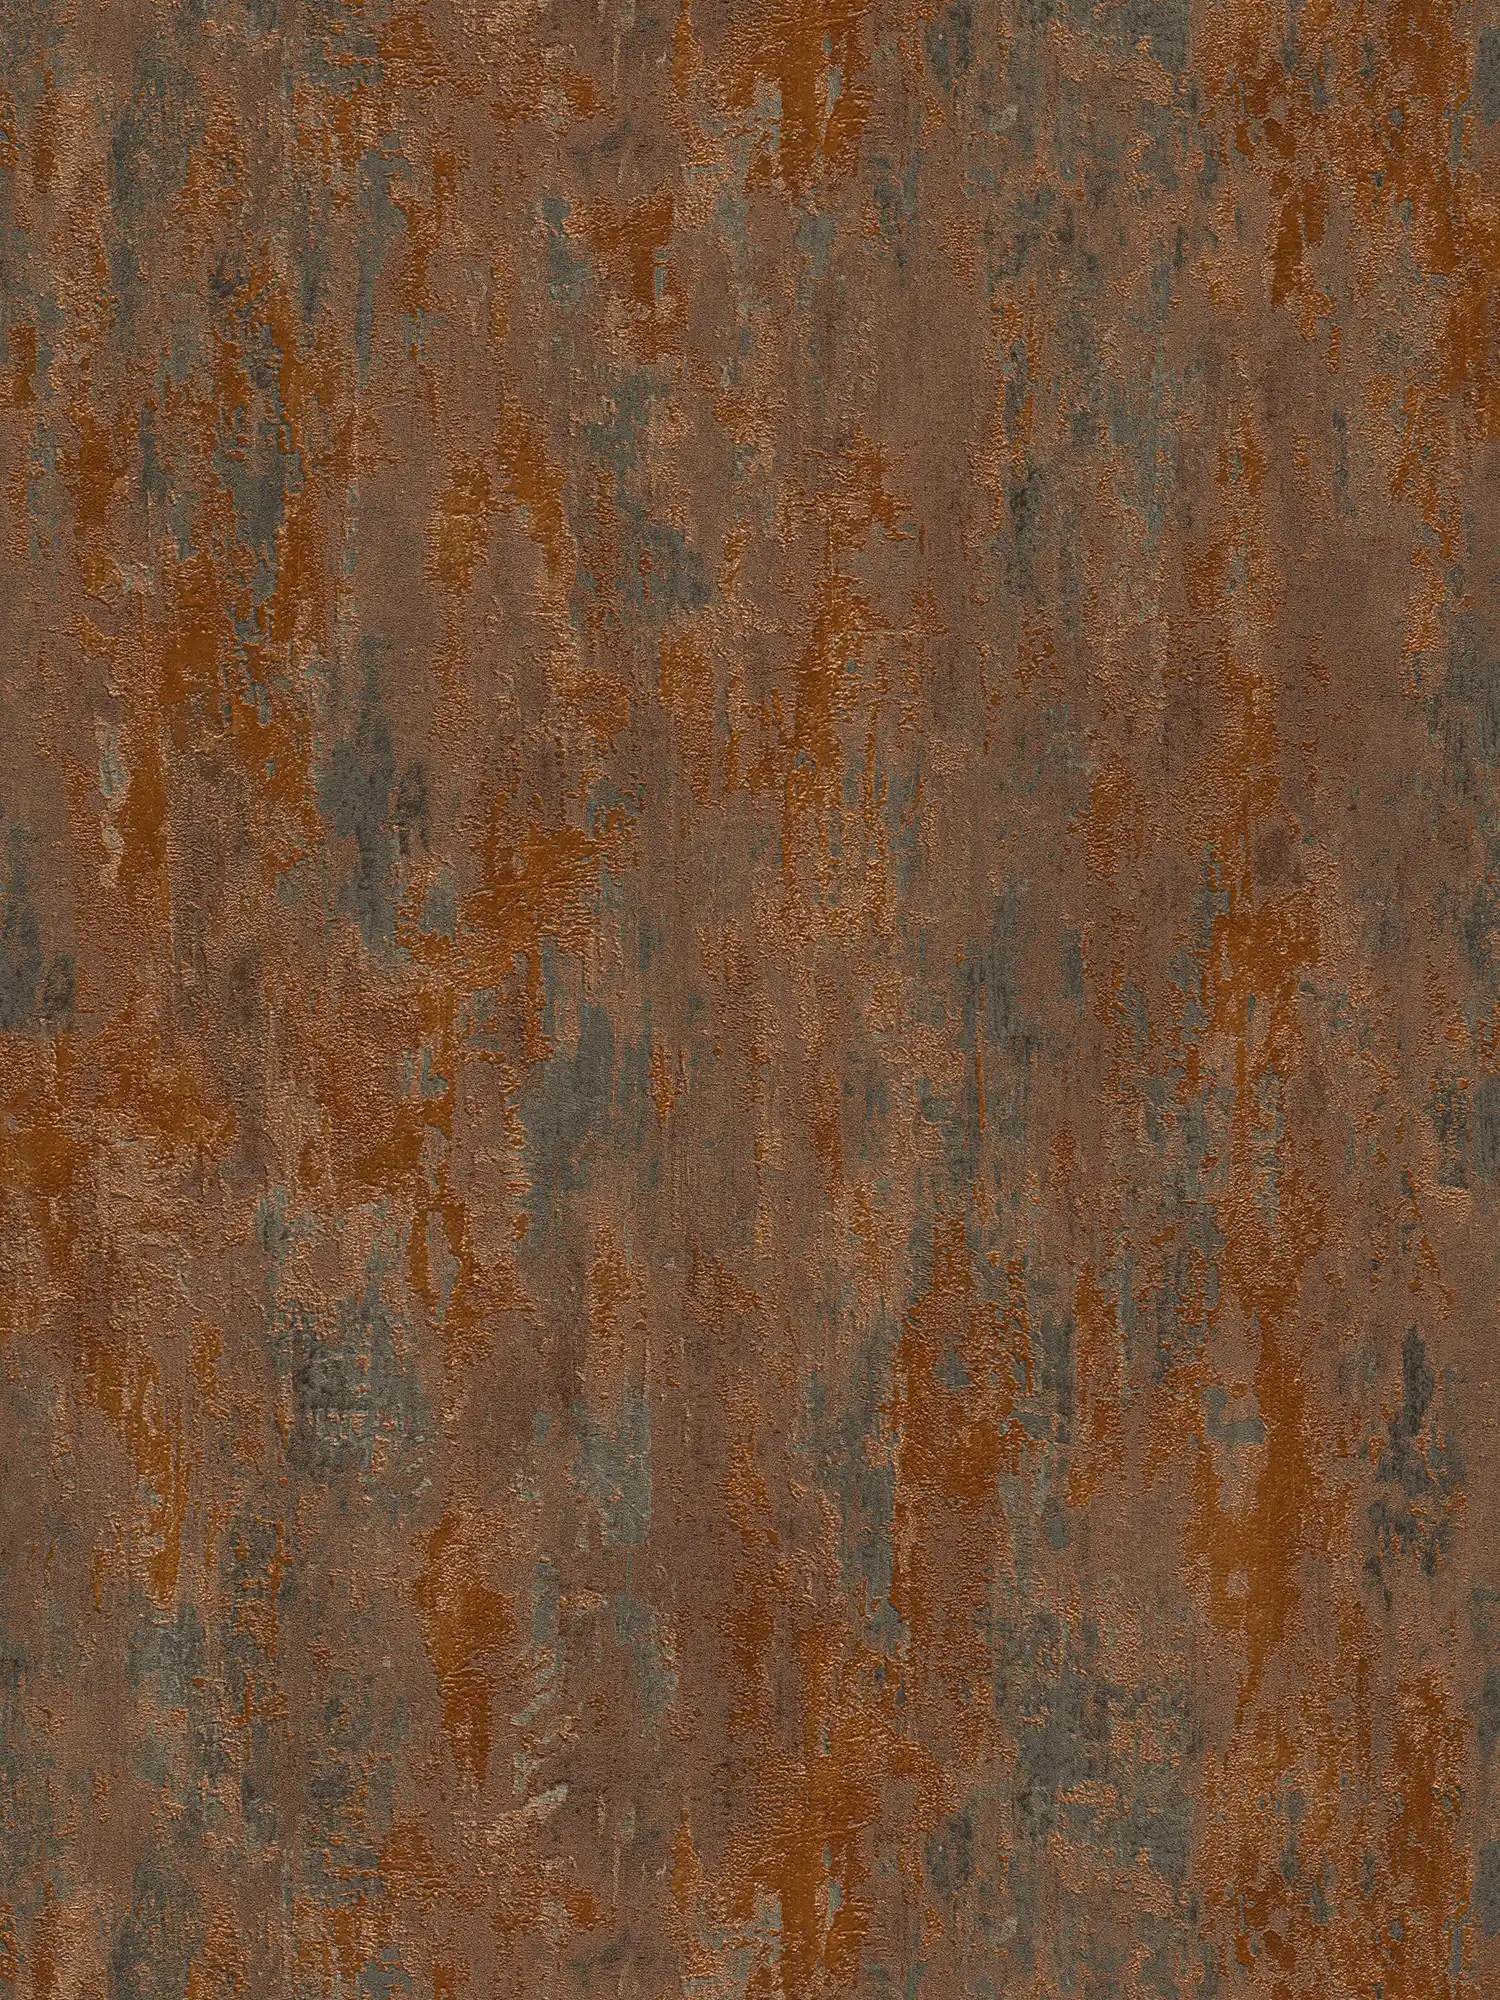         Roest- en metaaleffectbehang in industriële stijl - oranje, koper, bruin
    